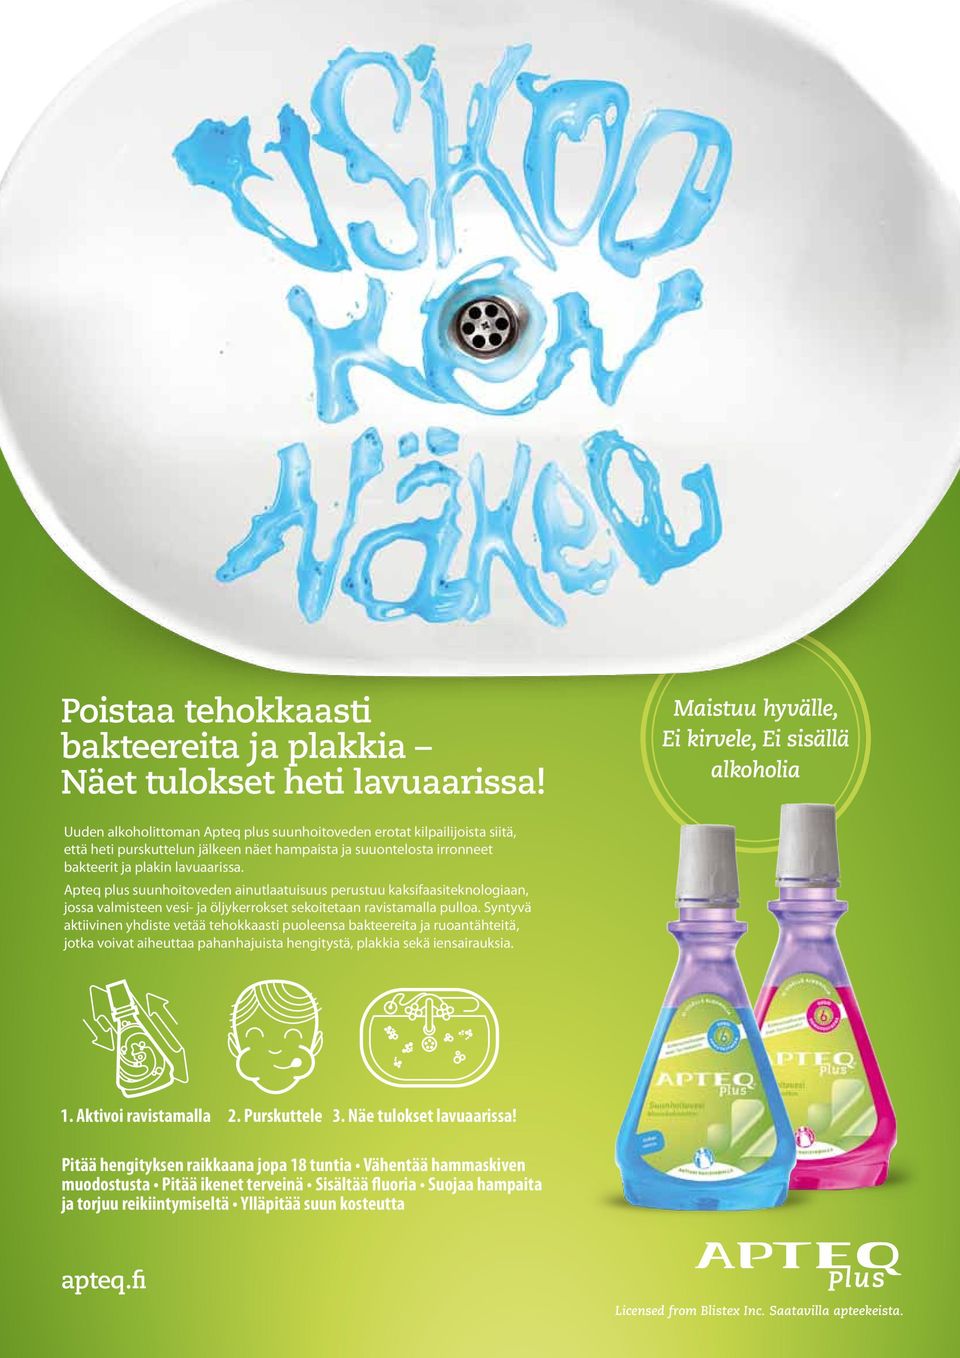 bakteerit ja plakin lavuaarissa. Apteq plus suunhoitoveden ainutlaatuisuus perustuu kaksifaasiteknologiaan, jossa valmisteen vesi- ja öljykerrokset sekoitetaan ravistamalla pulloa.